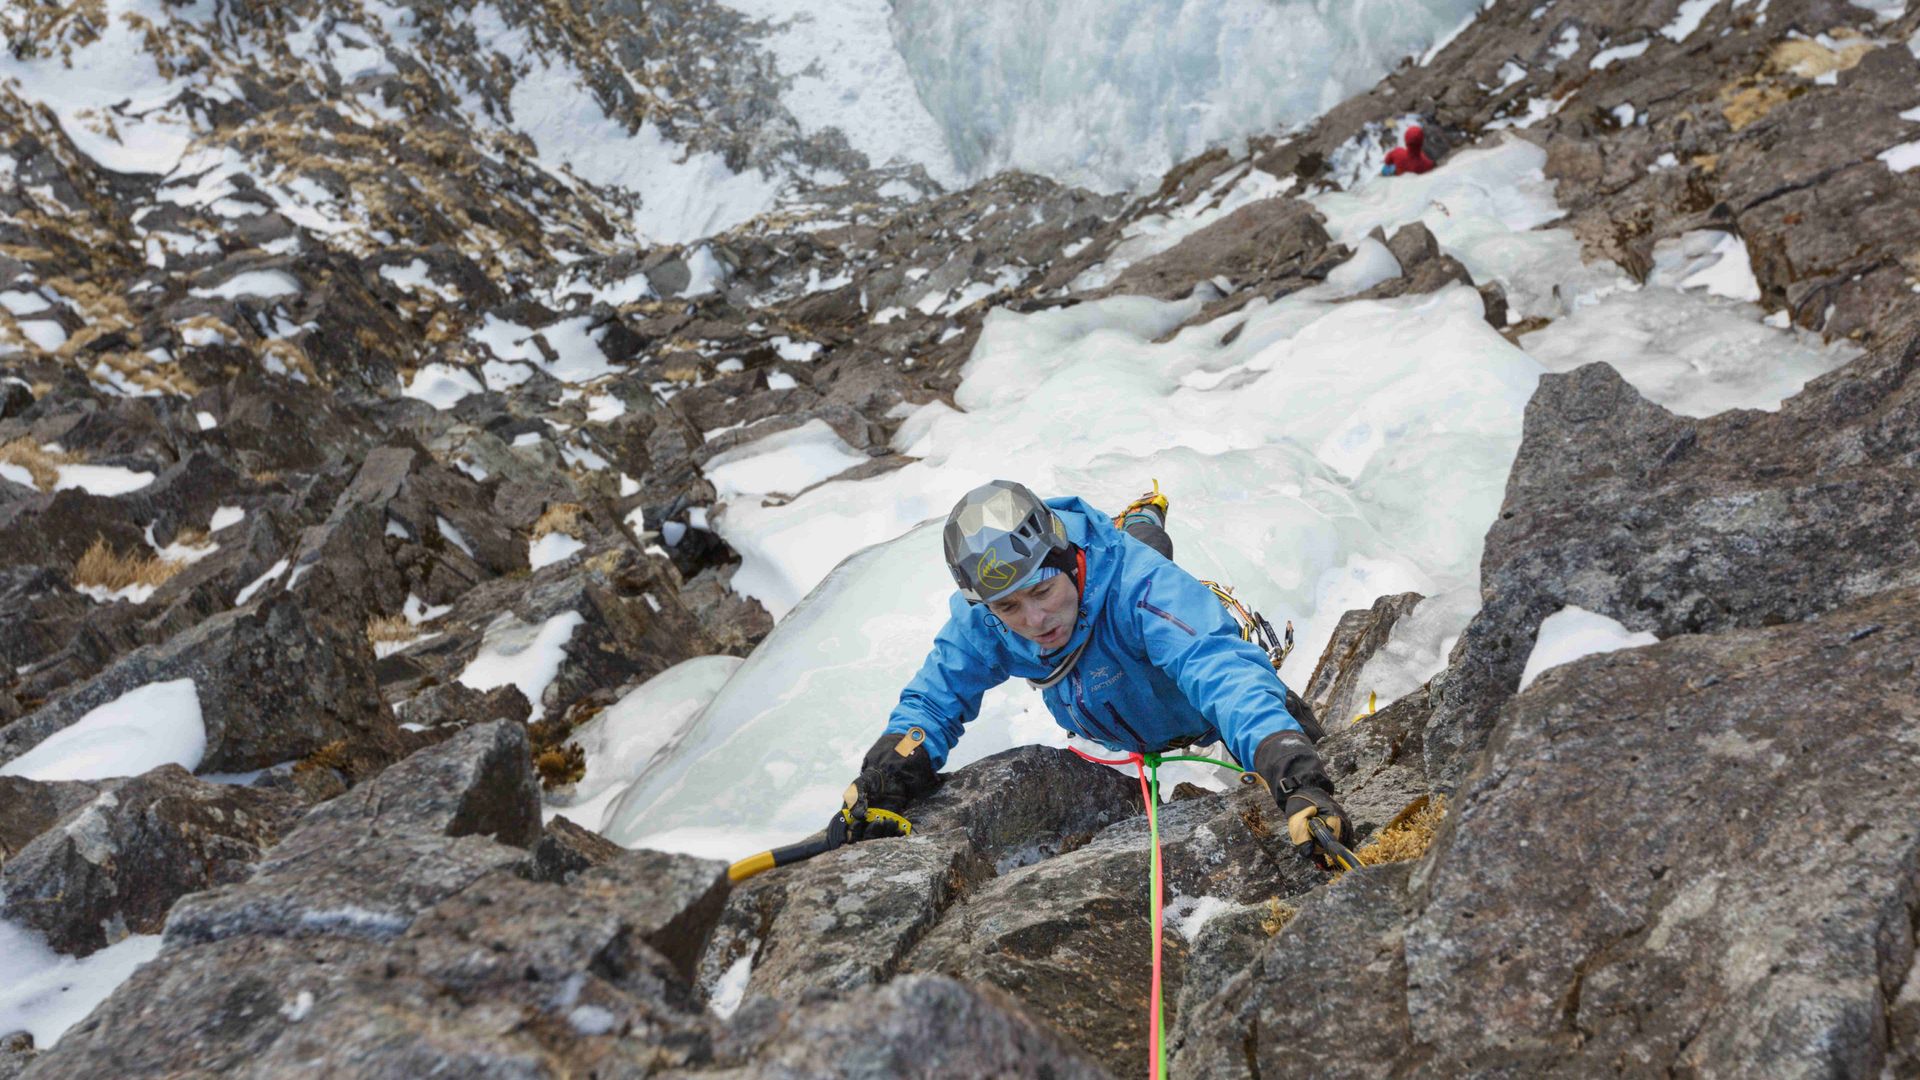 First ascent “Triptychon”, Weisssee Glacier, Austria